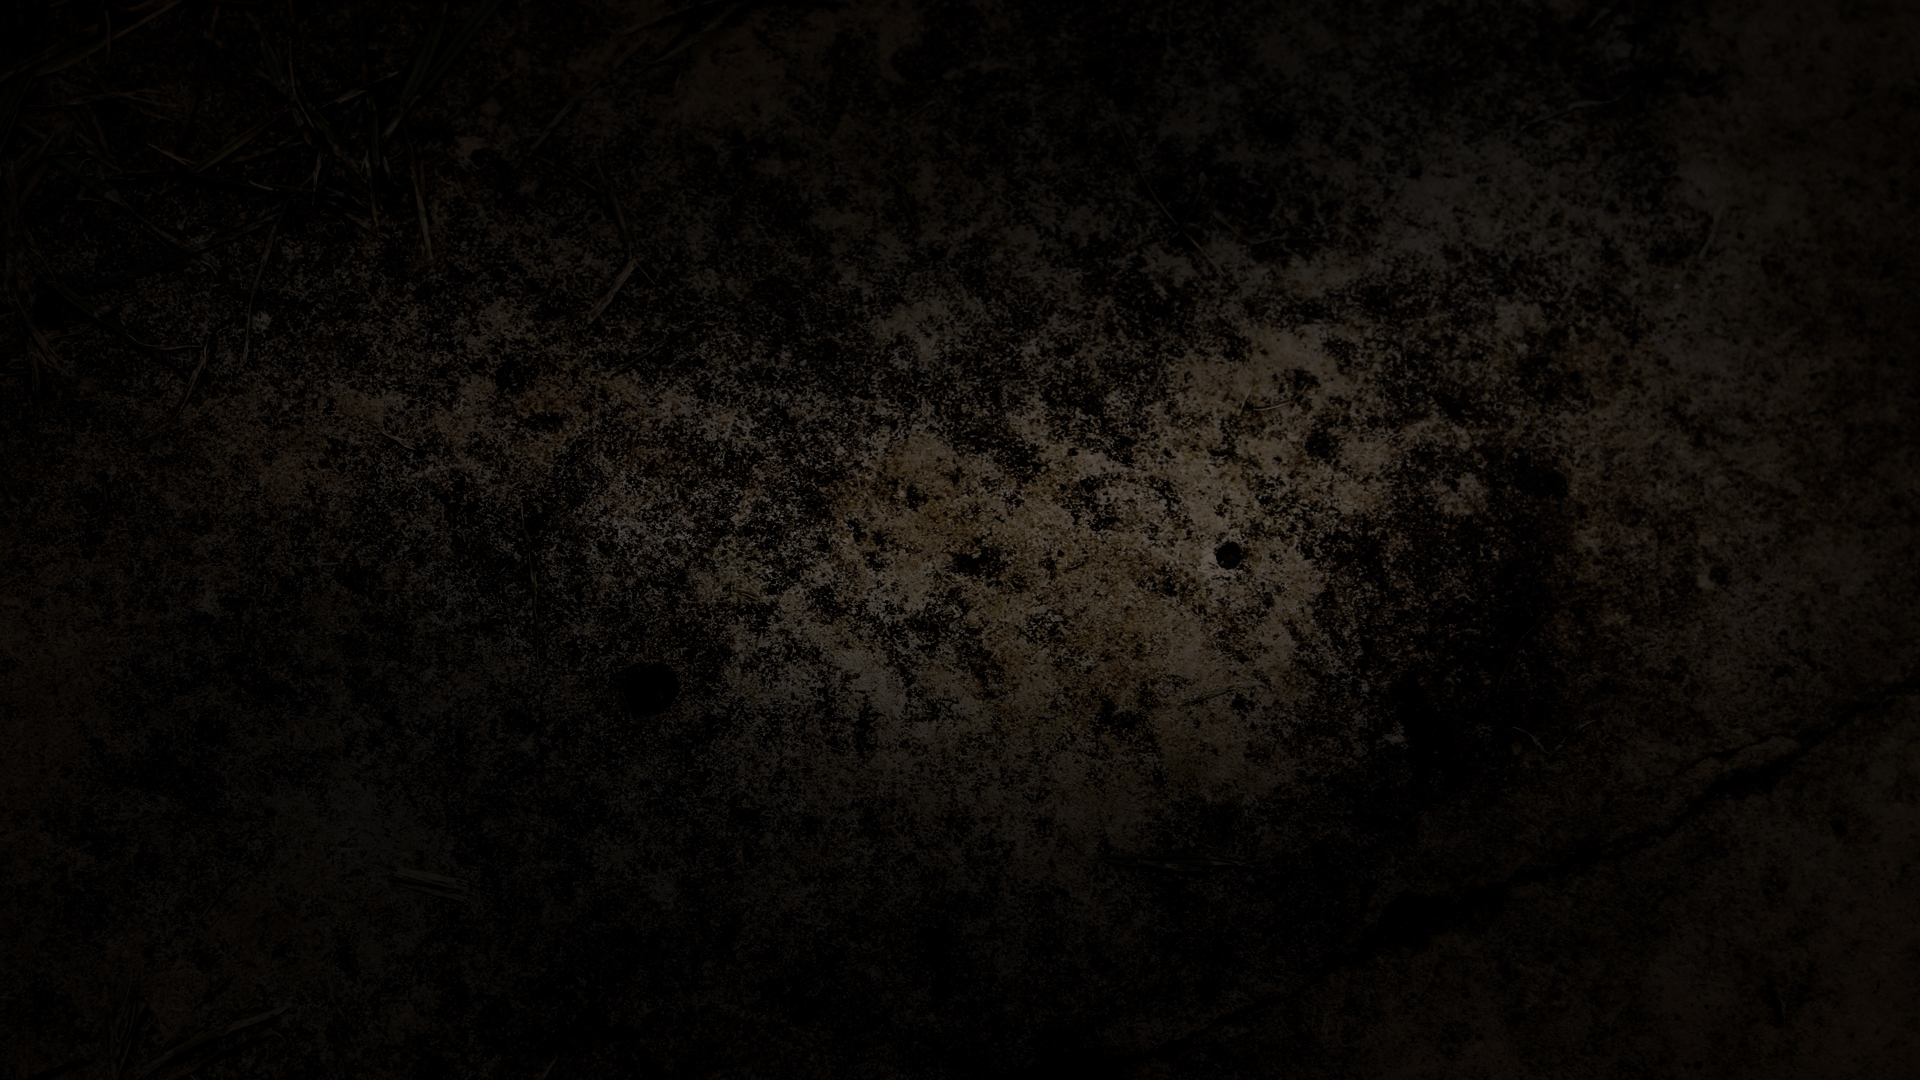 Dark Grunge Texture 05 | Motion Graphic Stock